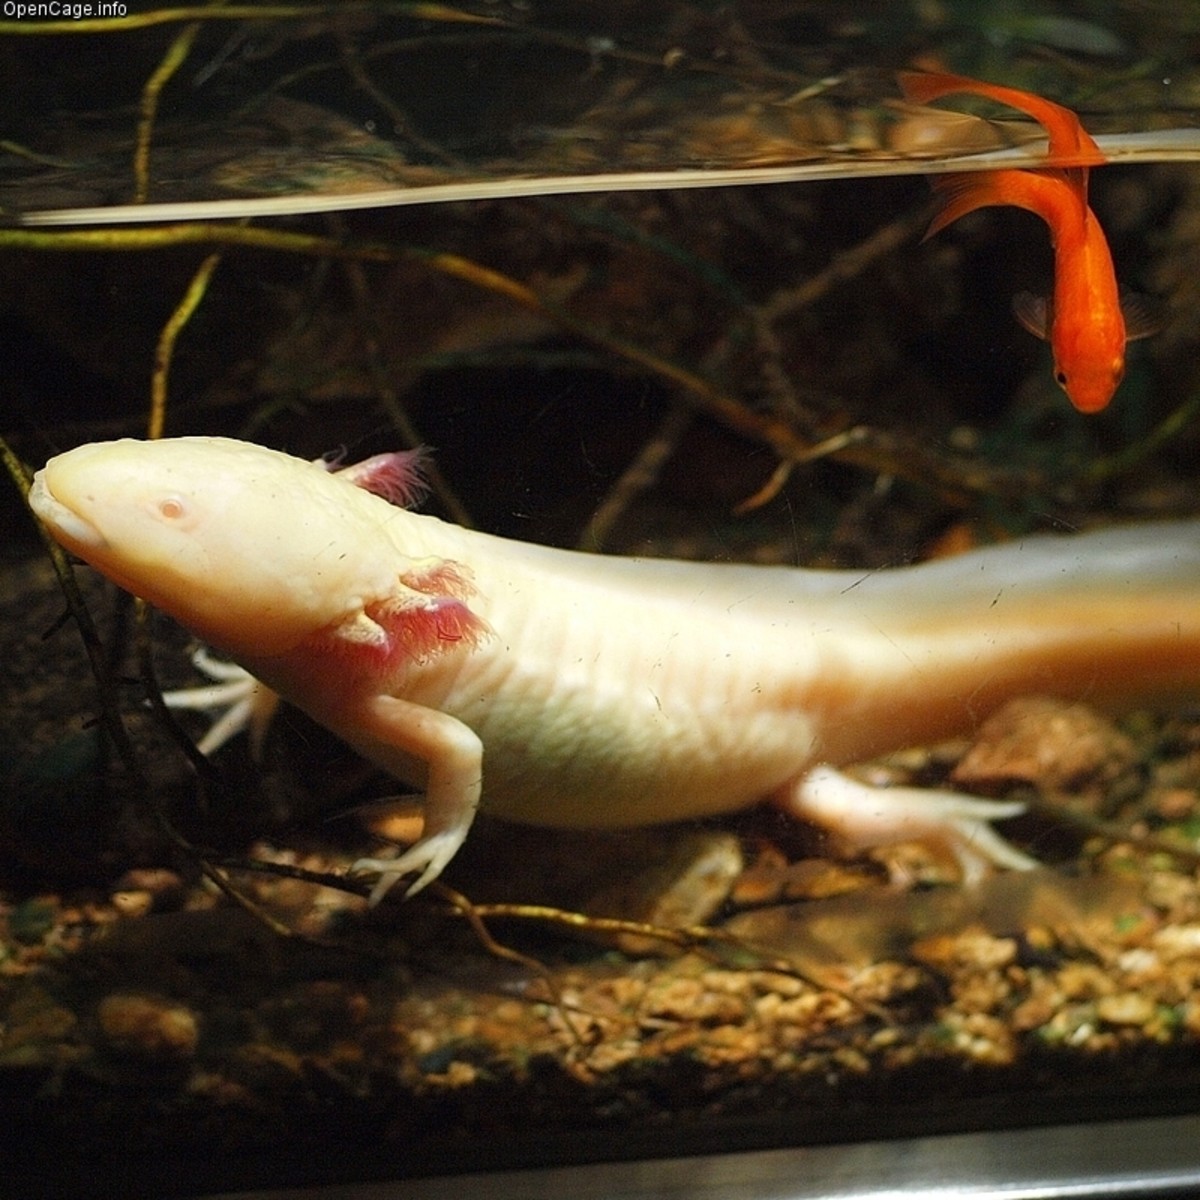 Another albino axolotl.